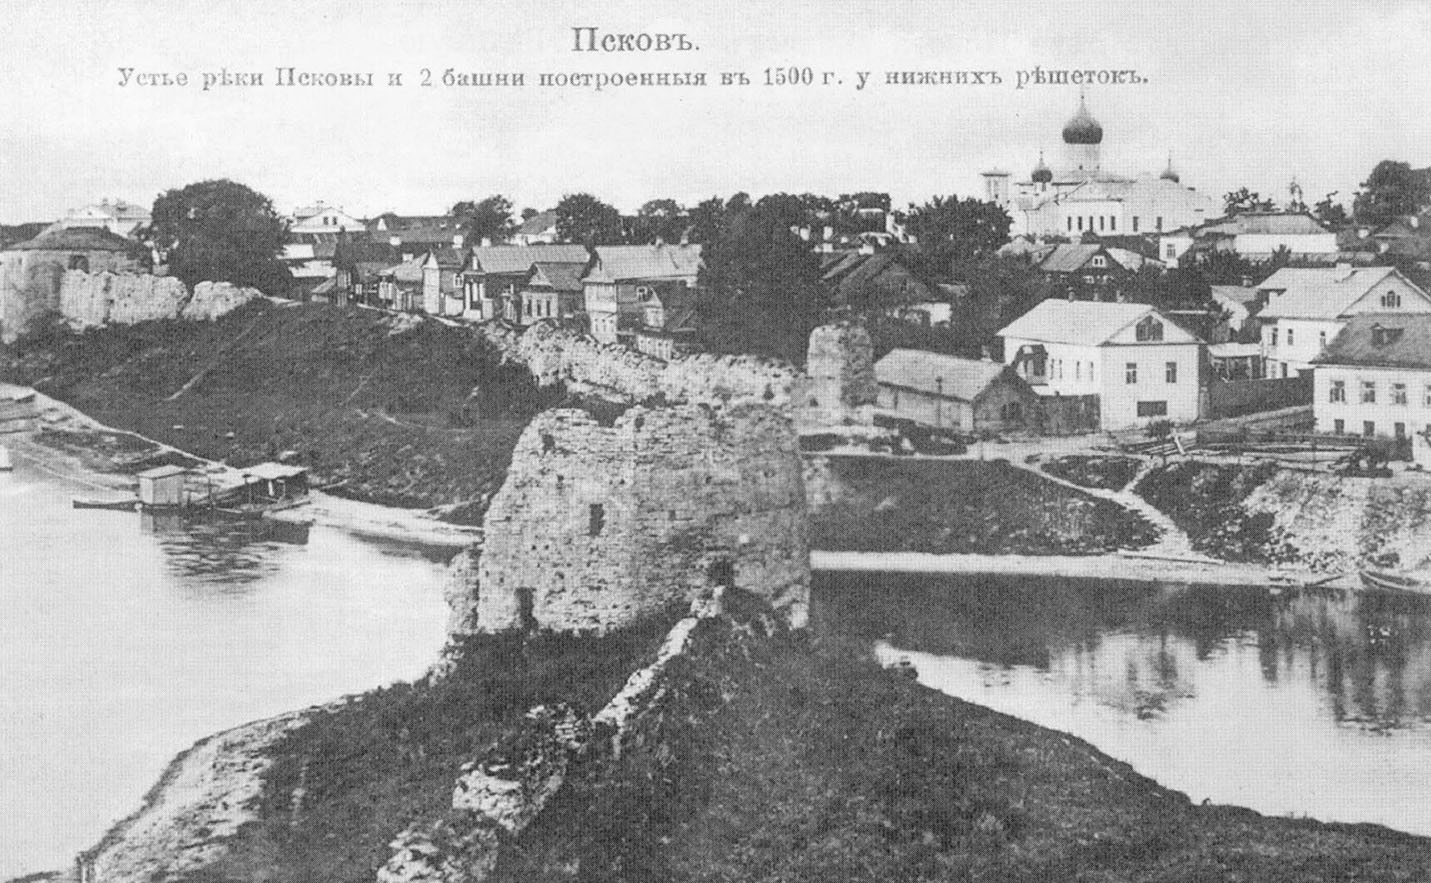 псков. Устье реки Псковы и 2 башни, построенные в 1500 г у нижних решеток.